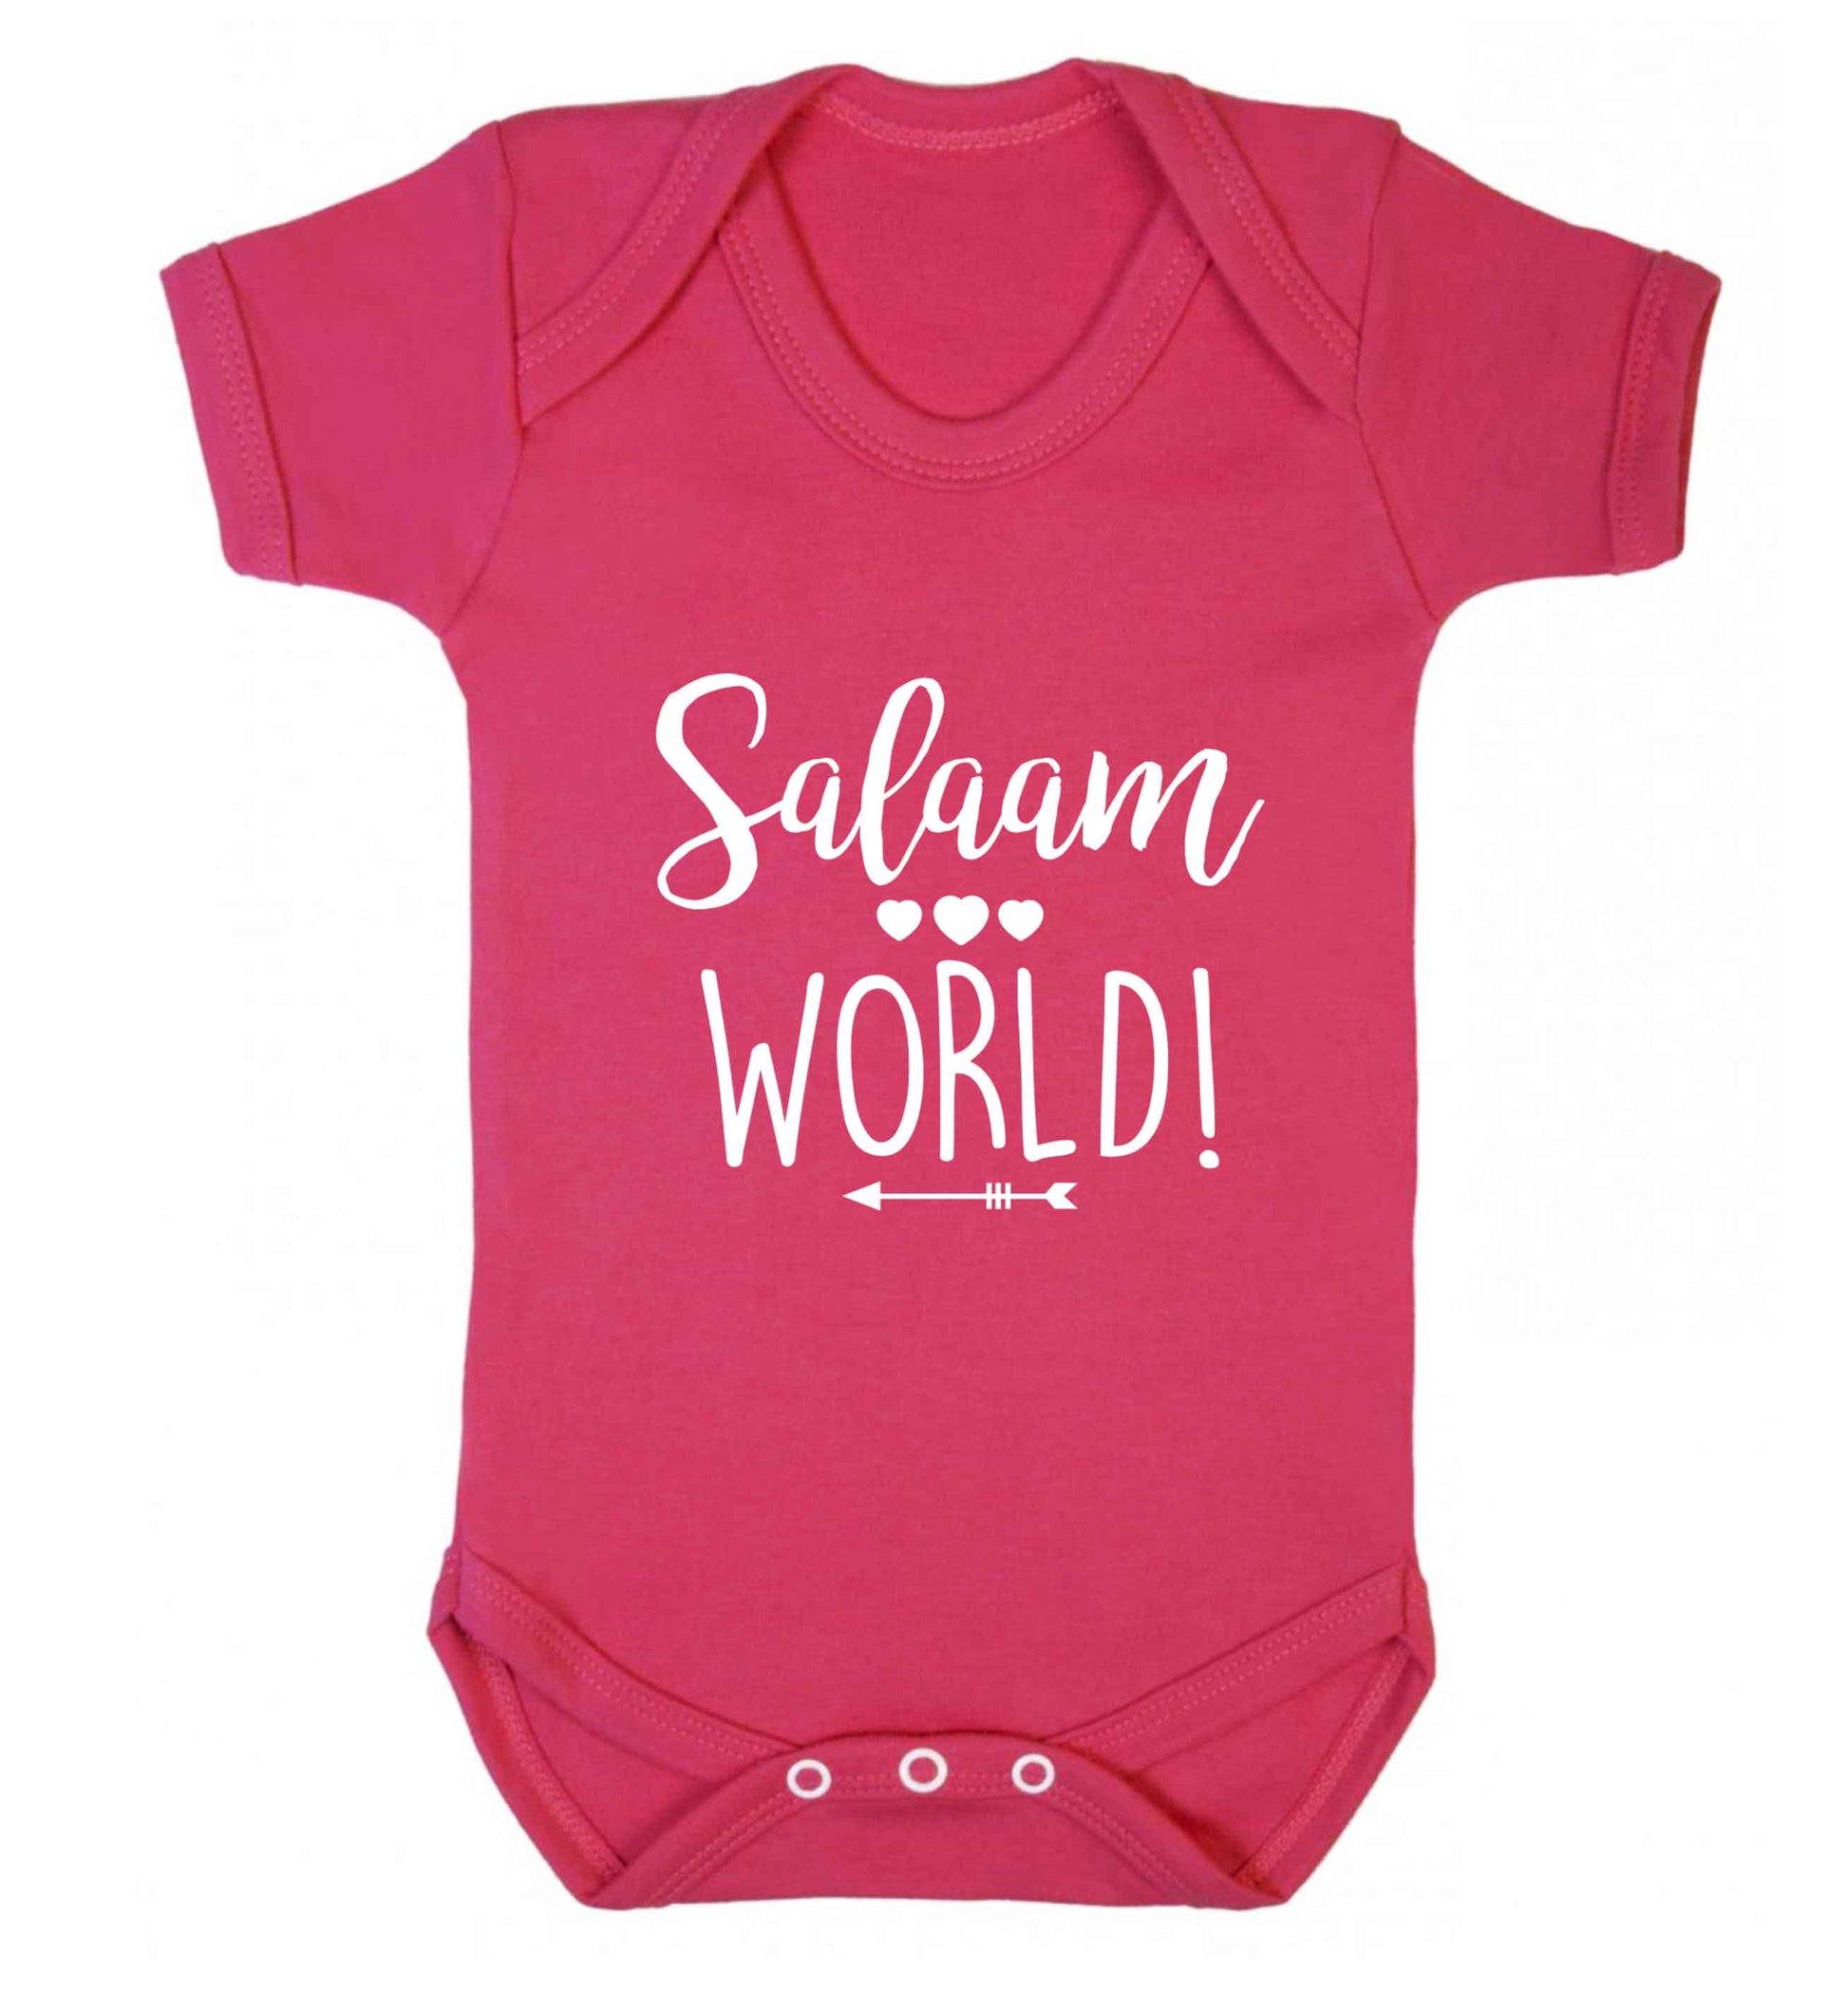 Salaam world baby vest dark pink 18-24 months